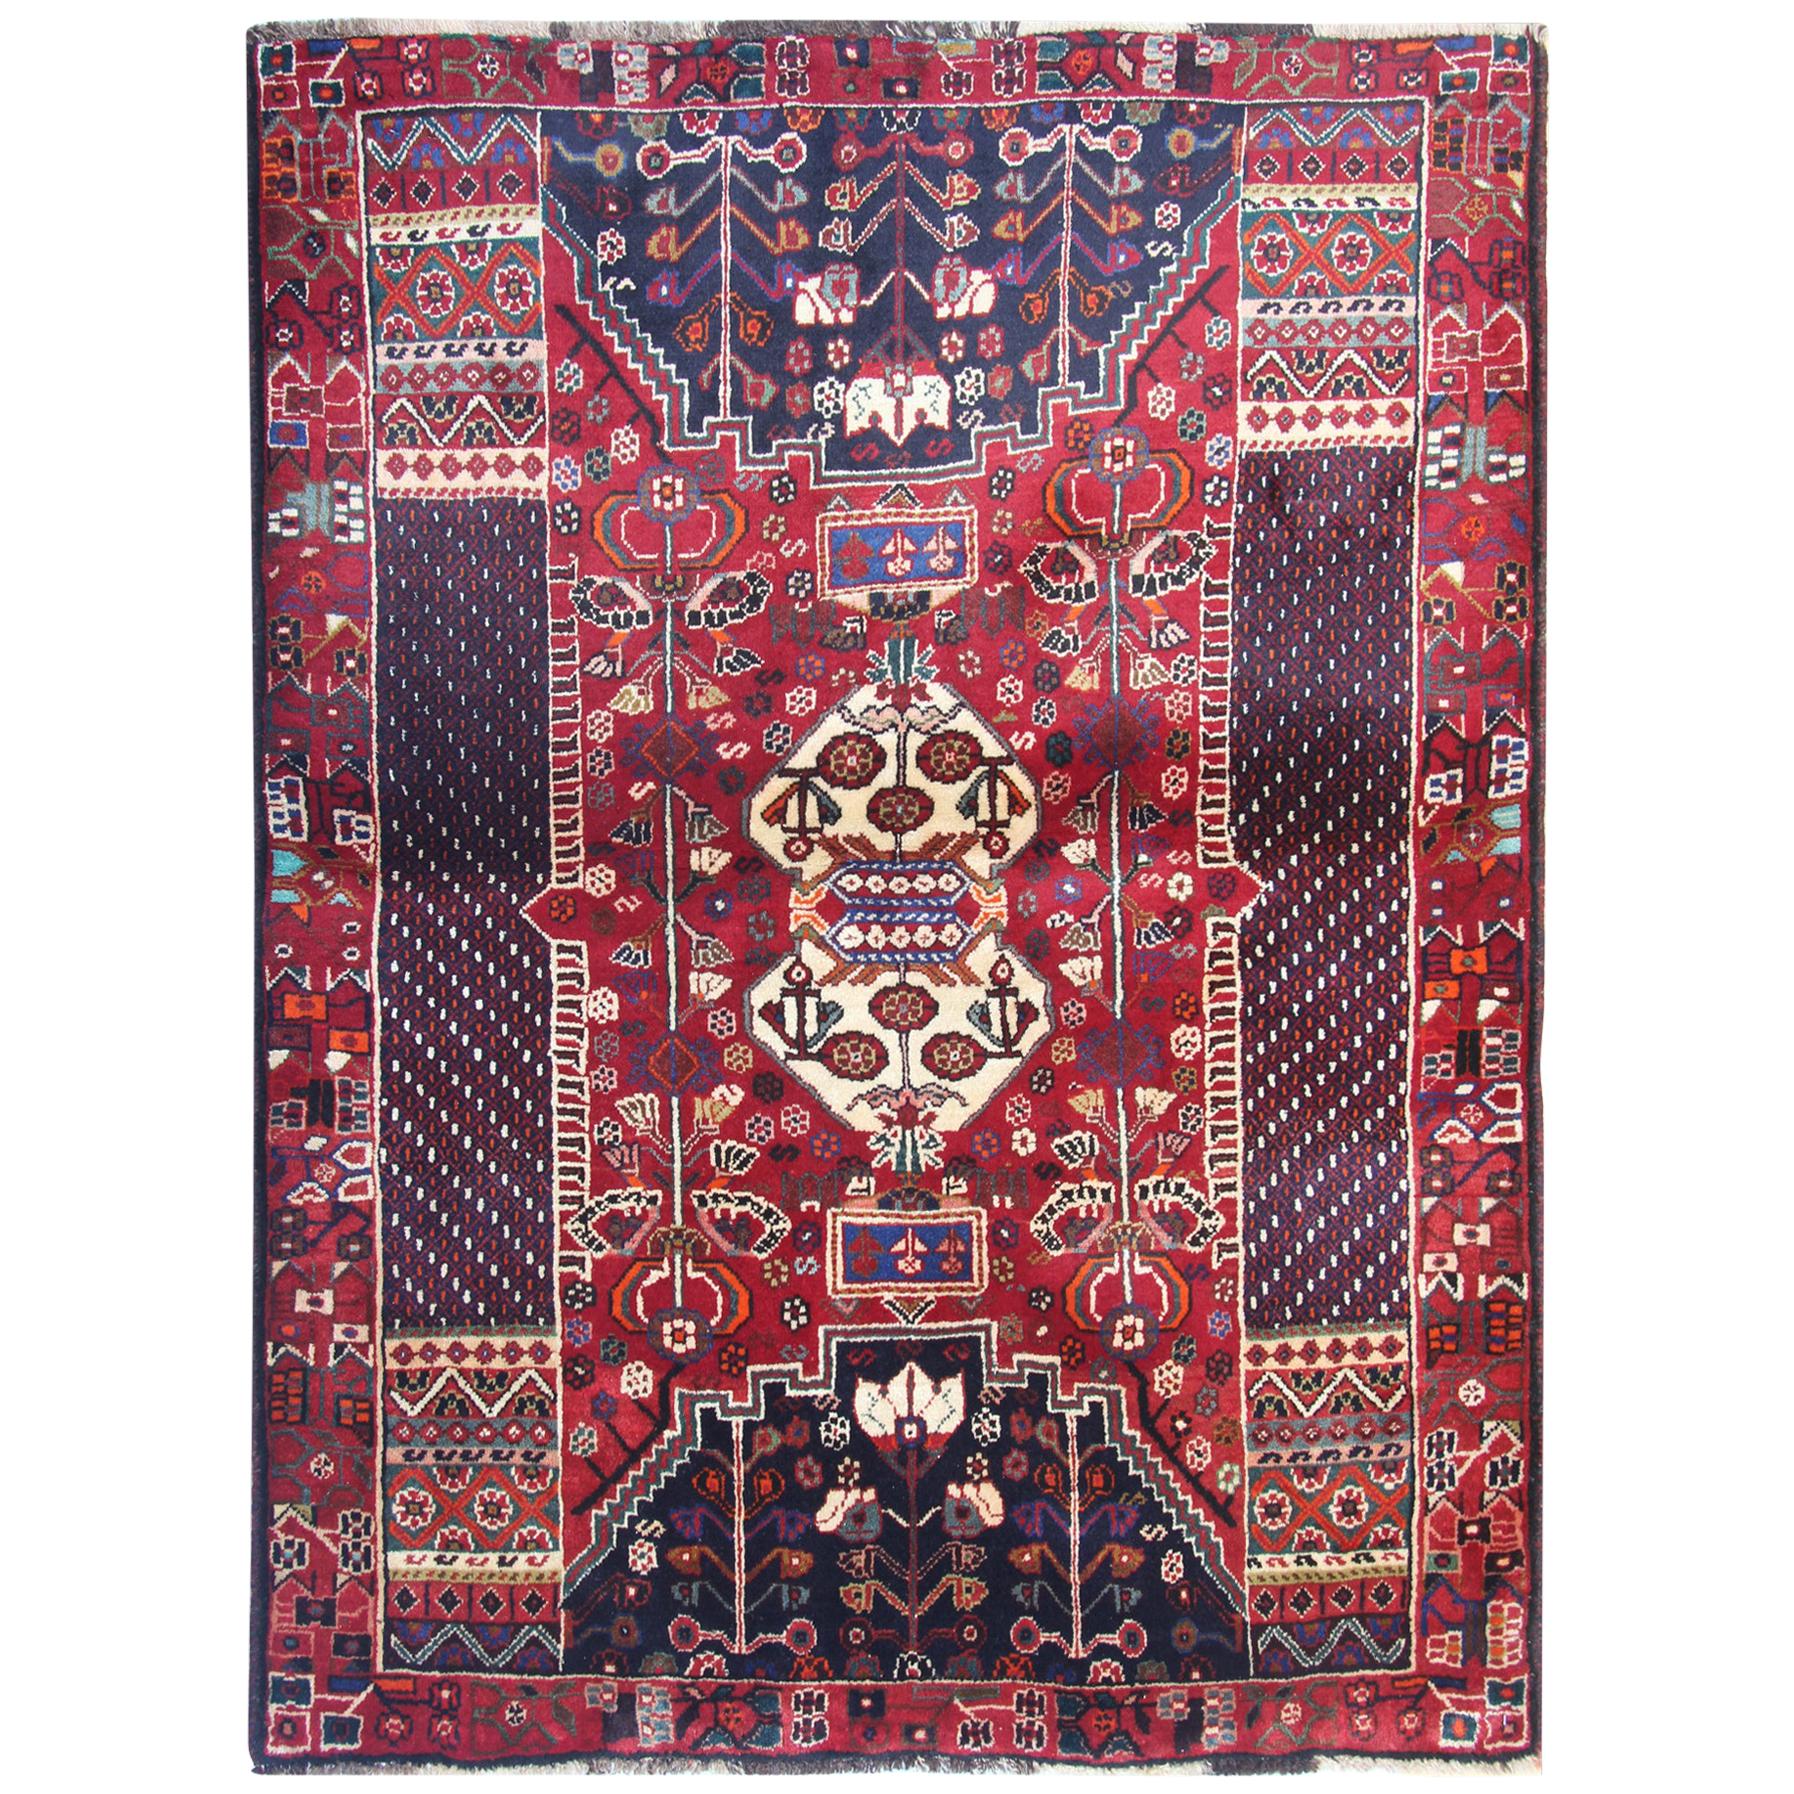 Roter orientalischer, handgefertigter Teppich mit geometrischem Muster, Wohnzimmerteppiche im Angebot